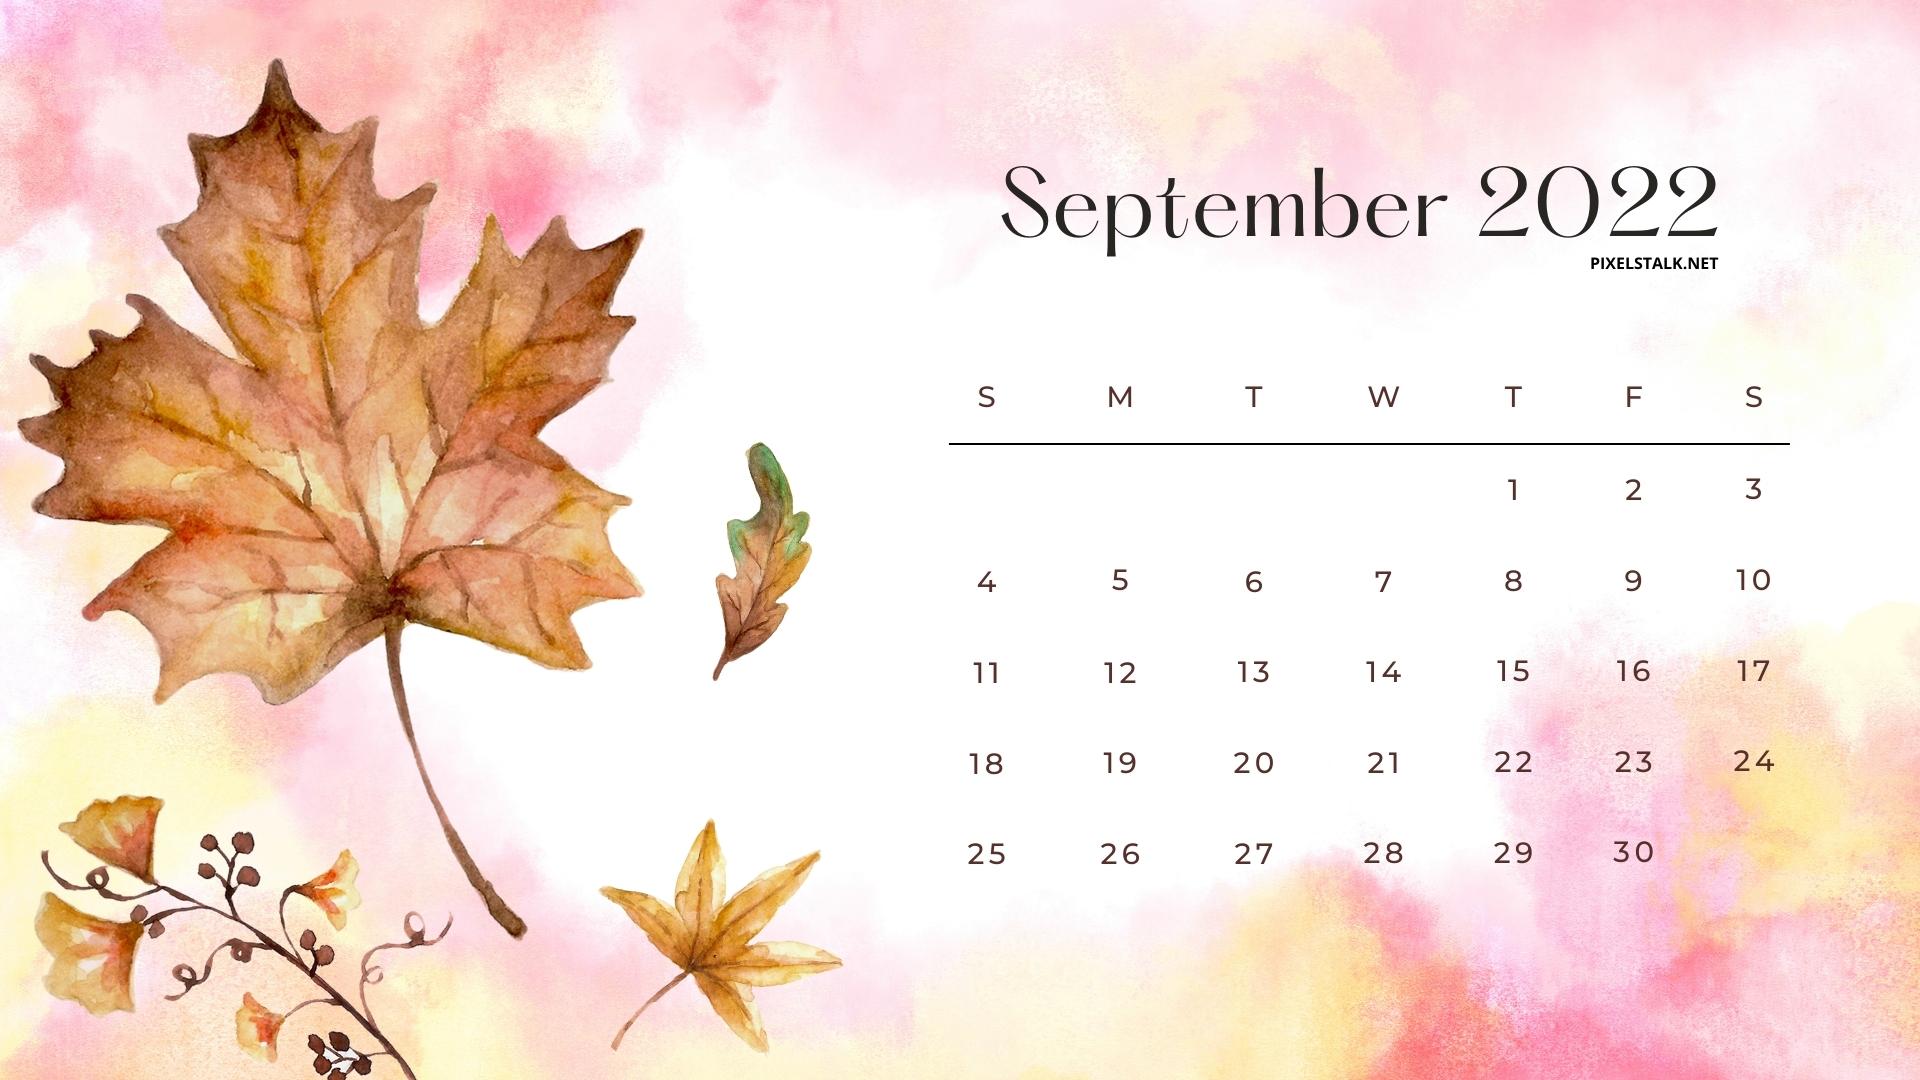 Lịch tháng Chín: Nếu bạn muốn sắp xếp thời gian hoạt động và sinh hoạt của mình, lịch tháng Chín là một sự lựa chọn tuyệt vời. Với hình nền lịch tuyệt đẹp, lịch tháng Chín sẽ giúp bạn hiểu rõ về thời gian và lịch trình. Tải xuống ngay để trang trí tường nhà hoặc văn phòng của bạn.